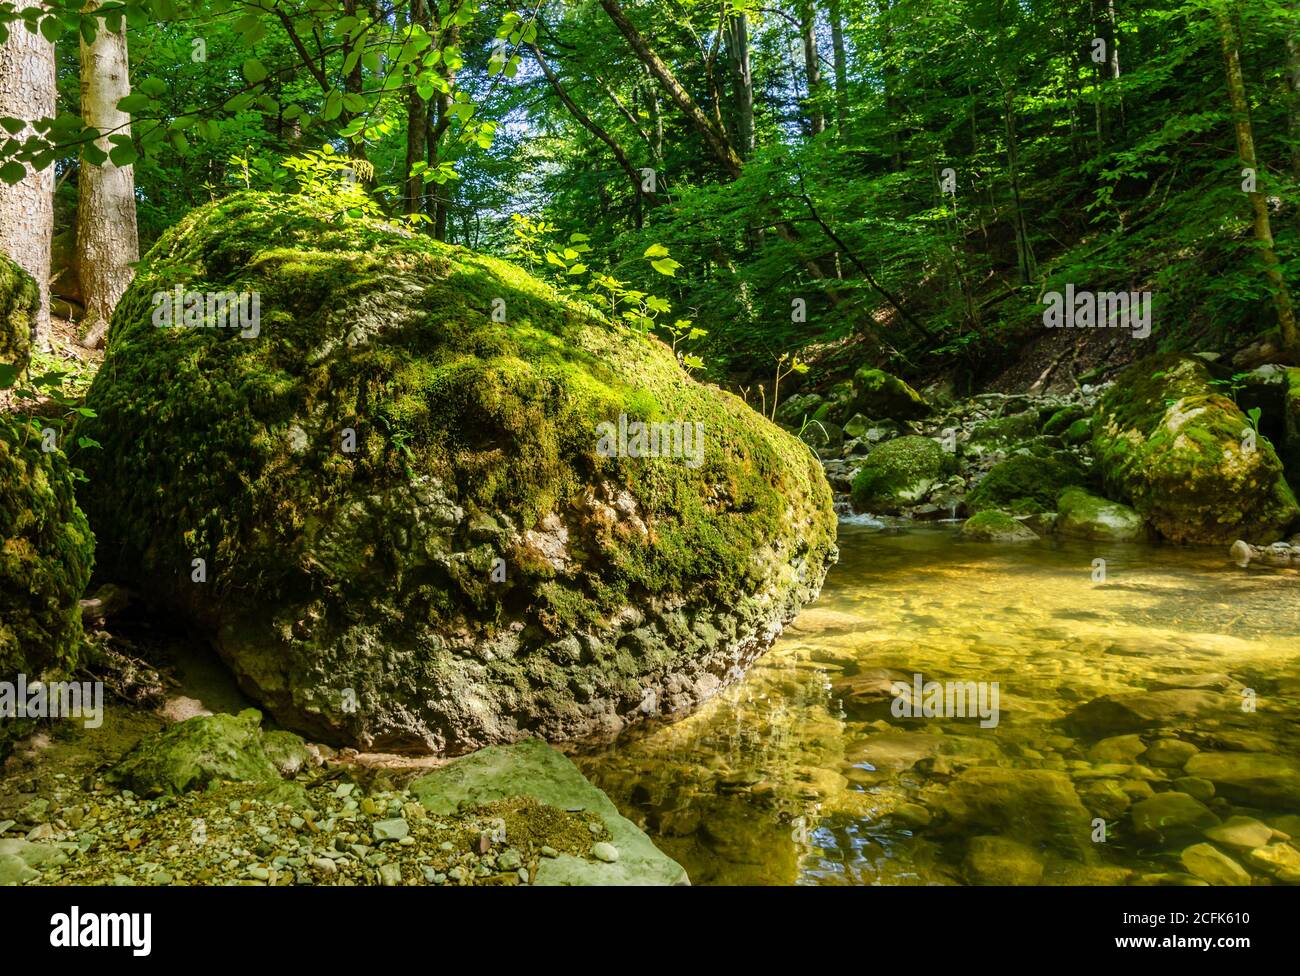 Grande roccia alla luce del sole, adirata di muschio verde, al torrente di una foresta naturale. Grande pietra al bordo di un letto del ruscello in una giornata estiva soleggiata Foto Stock